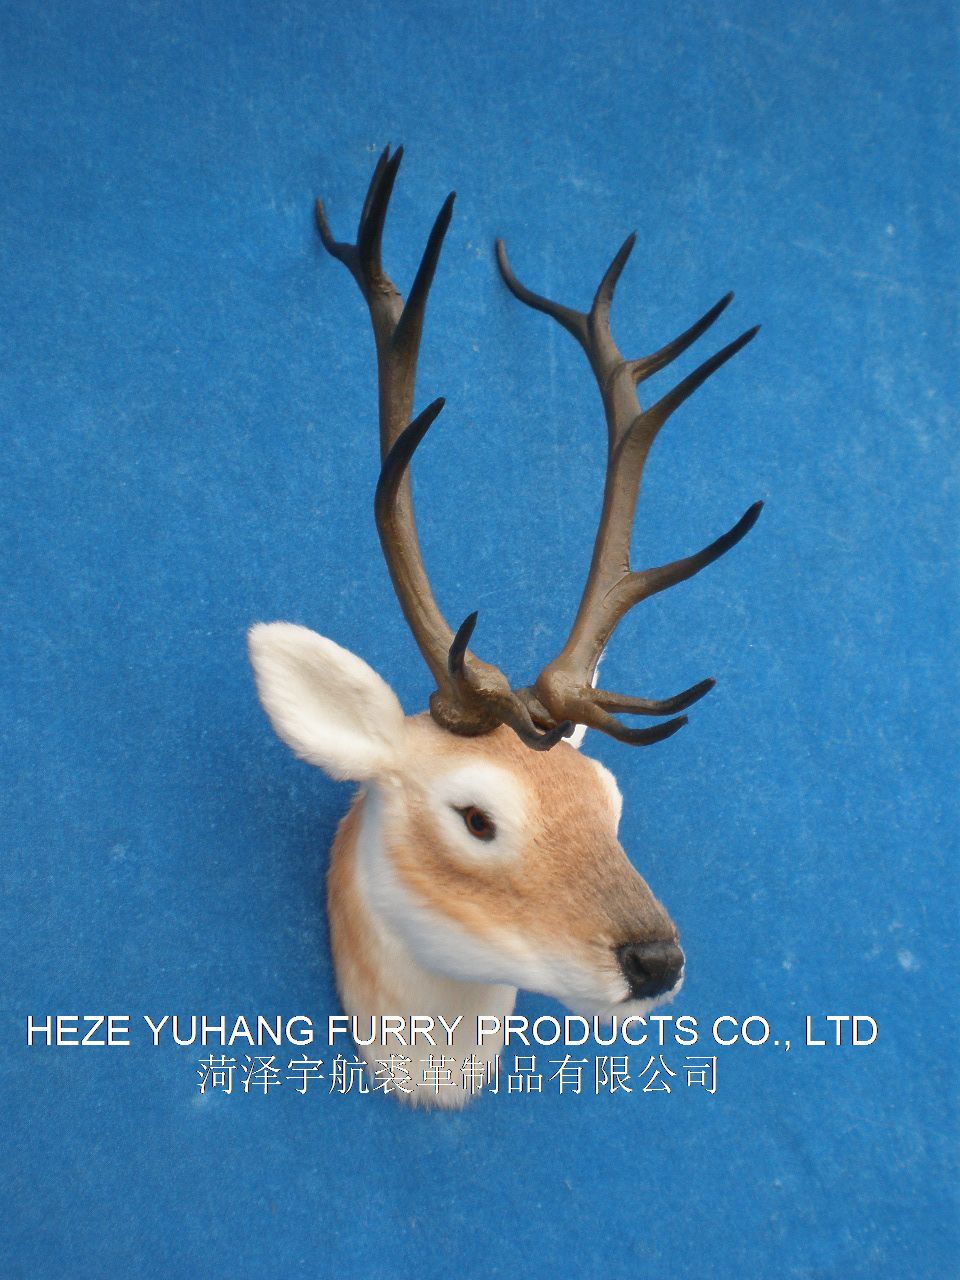 FHM530,菏泽宇航裘革制品有限公司专业仿真皮毛动物生产厂家